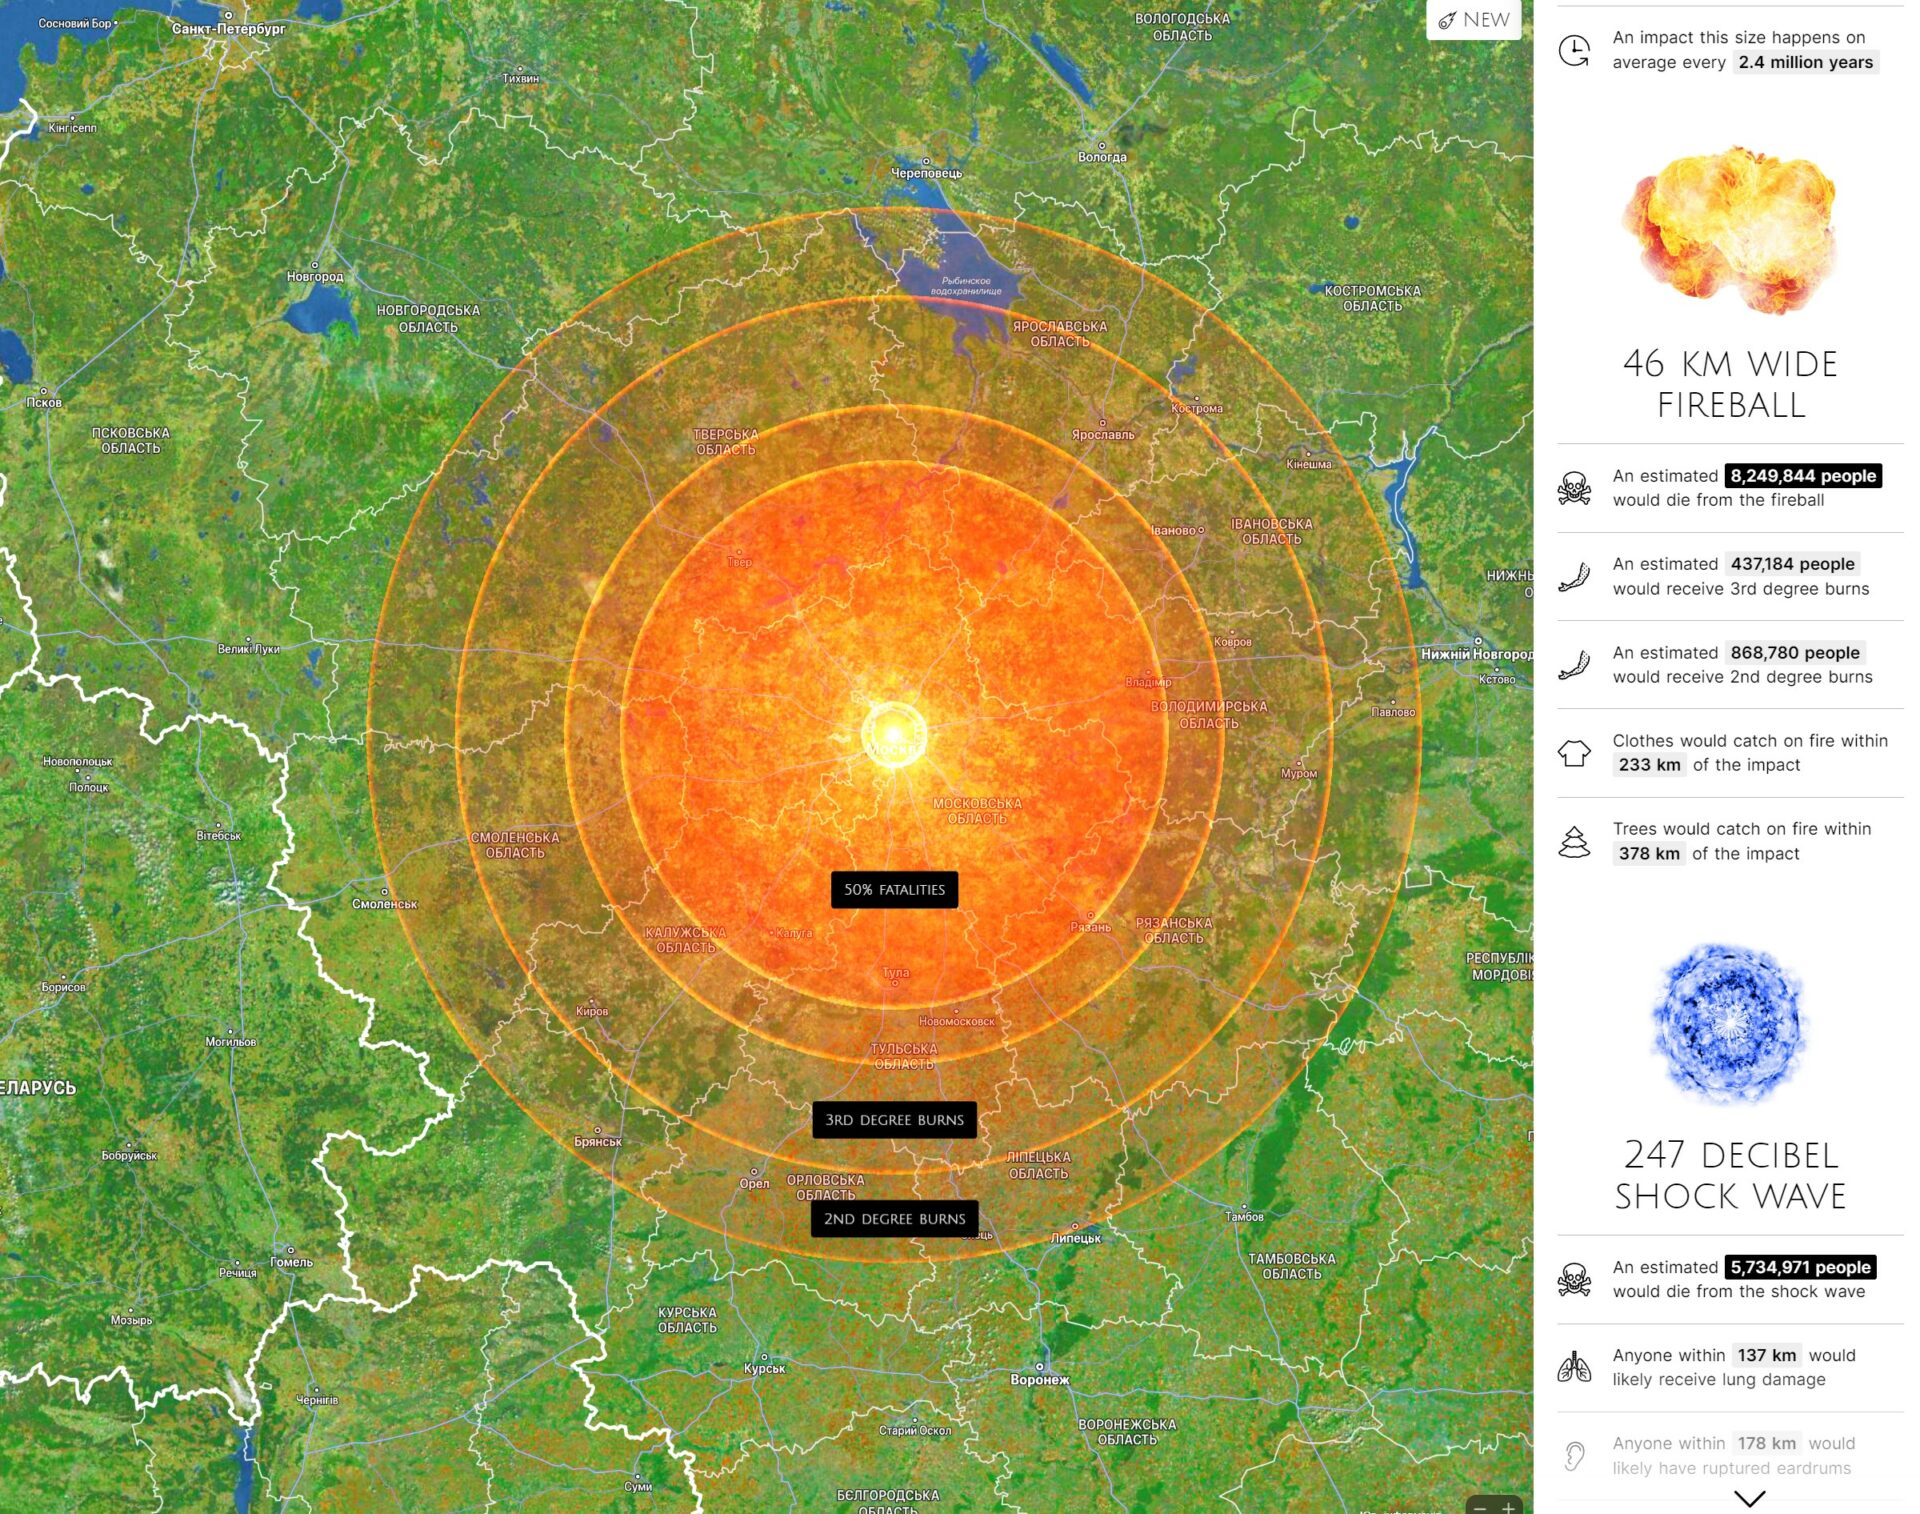 Мапа вогняної кулі над москвою та радіус дії високої температури від місця падіння